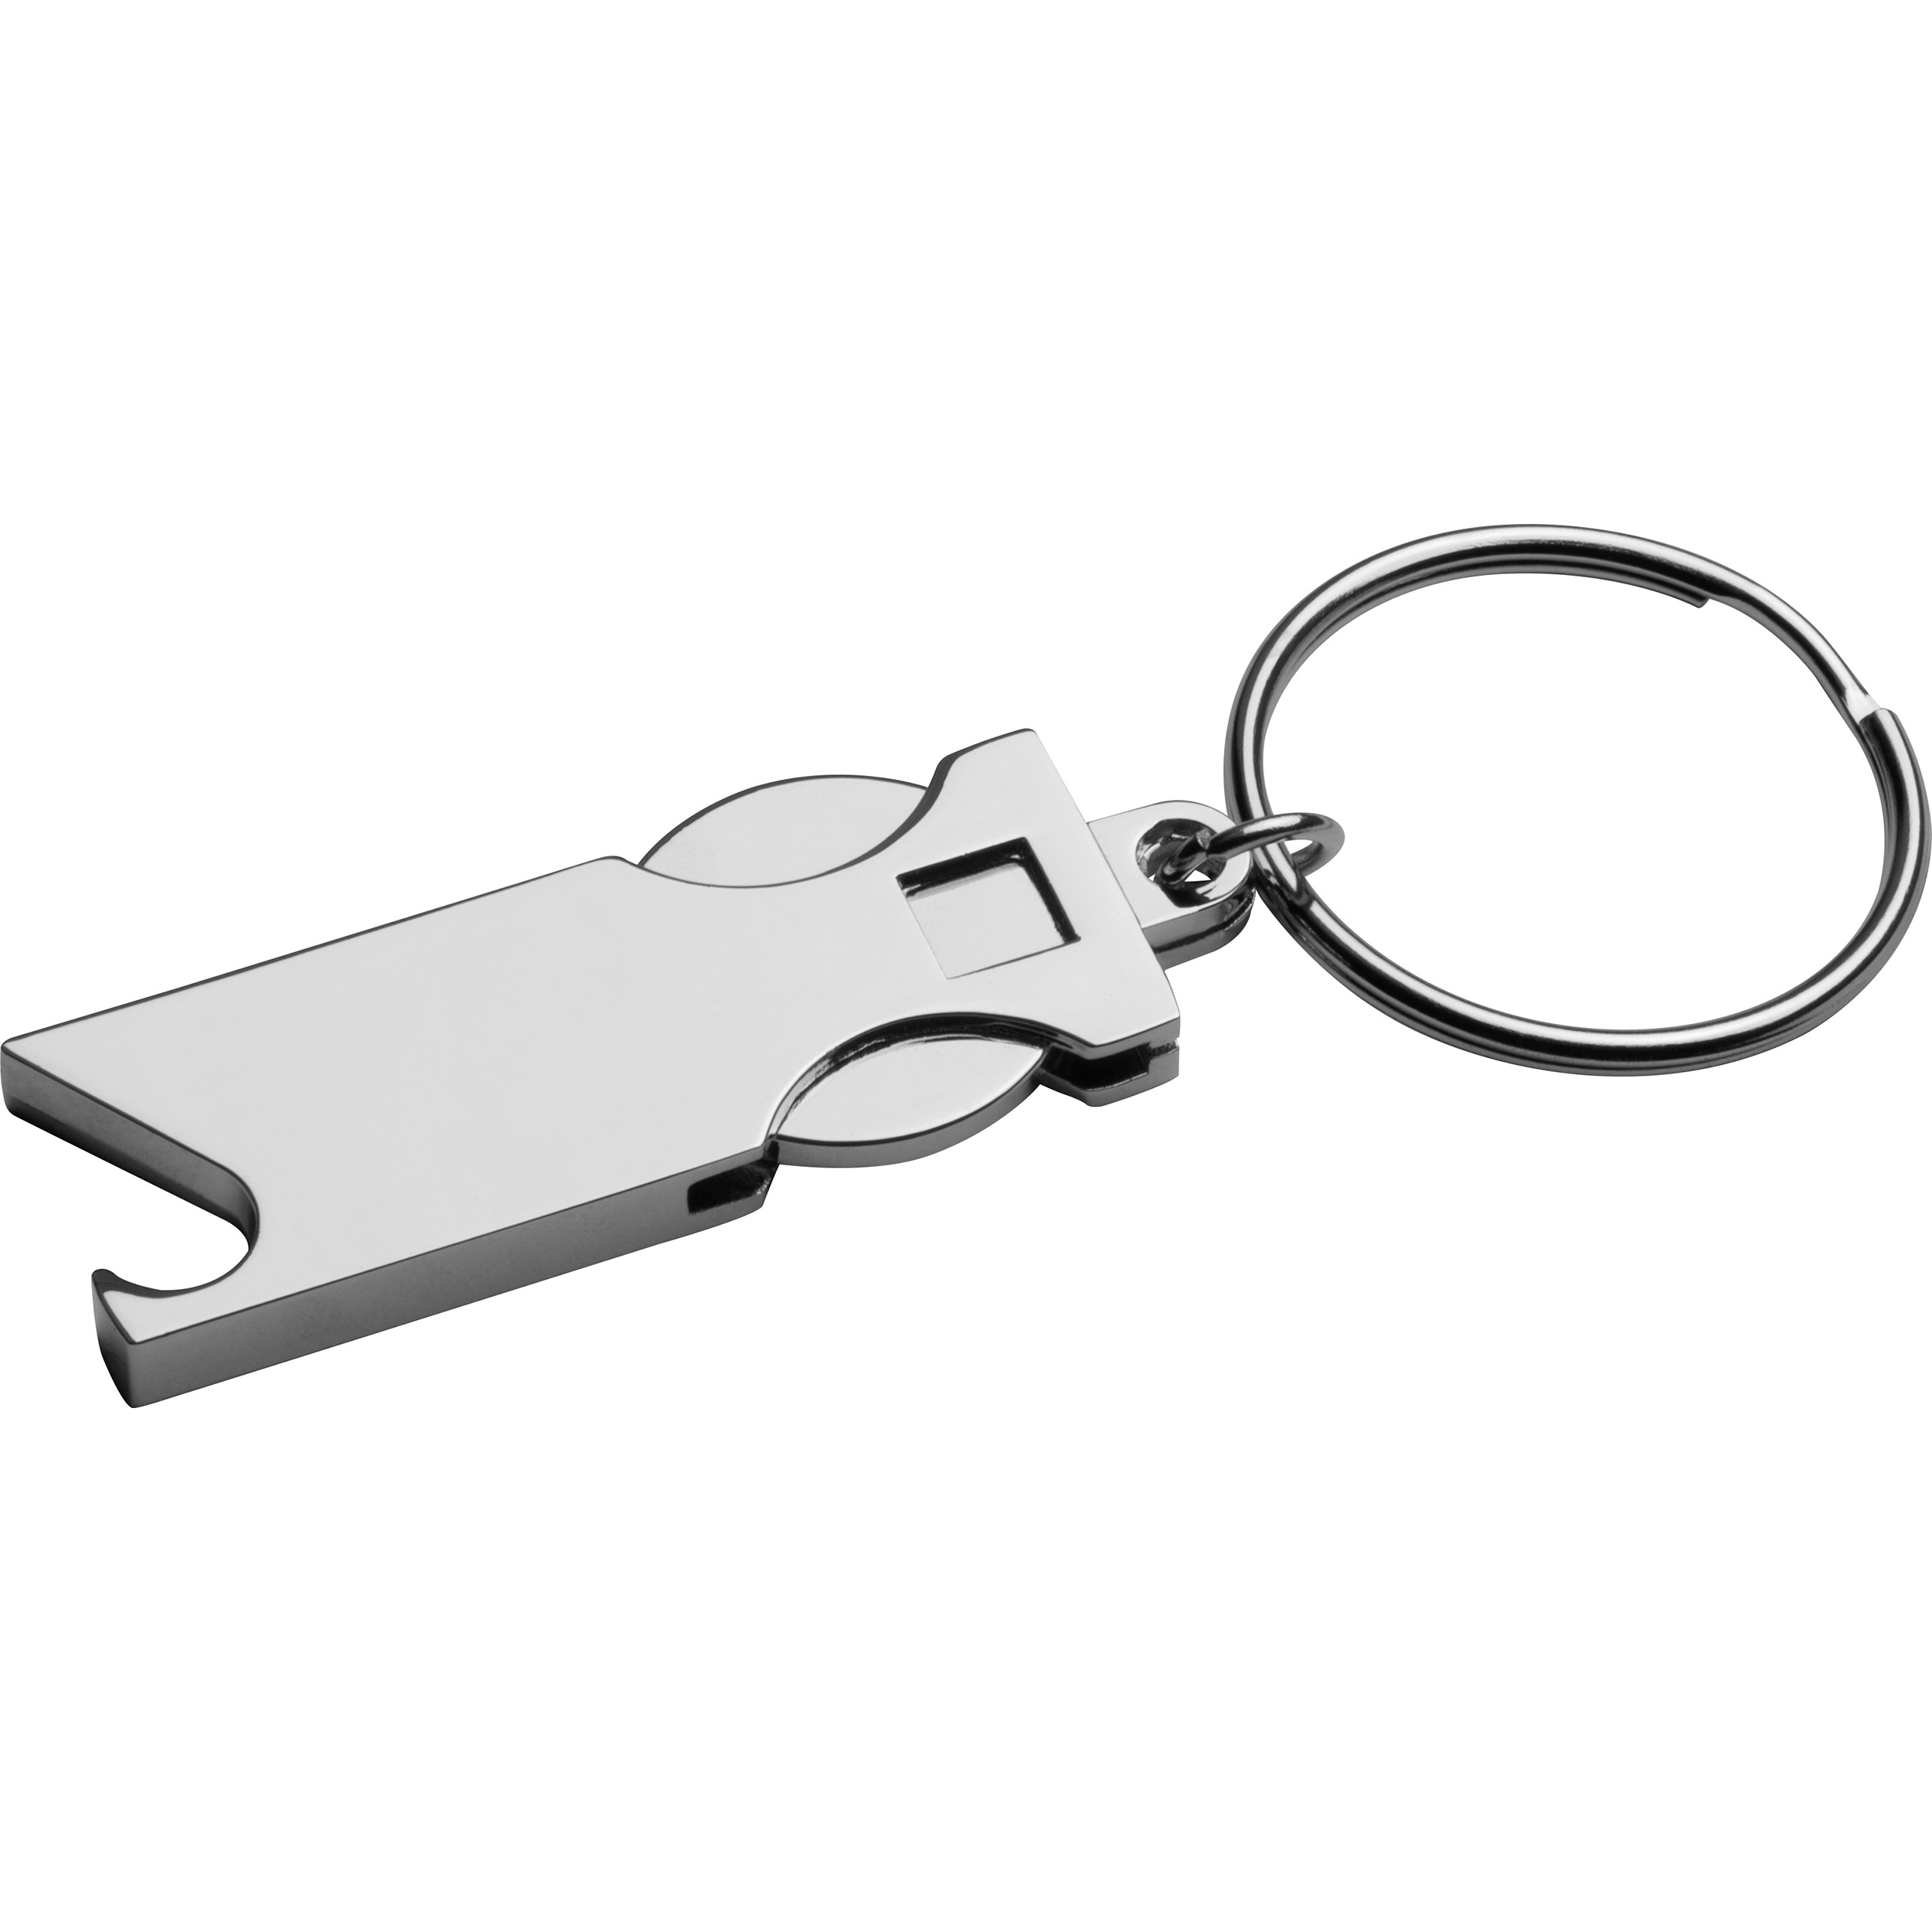 Flache Edelstahl-Schlüsselschilder rund mit Magnet werden